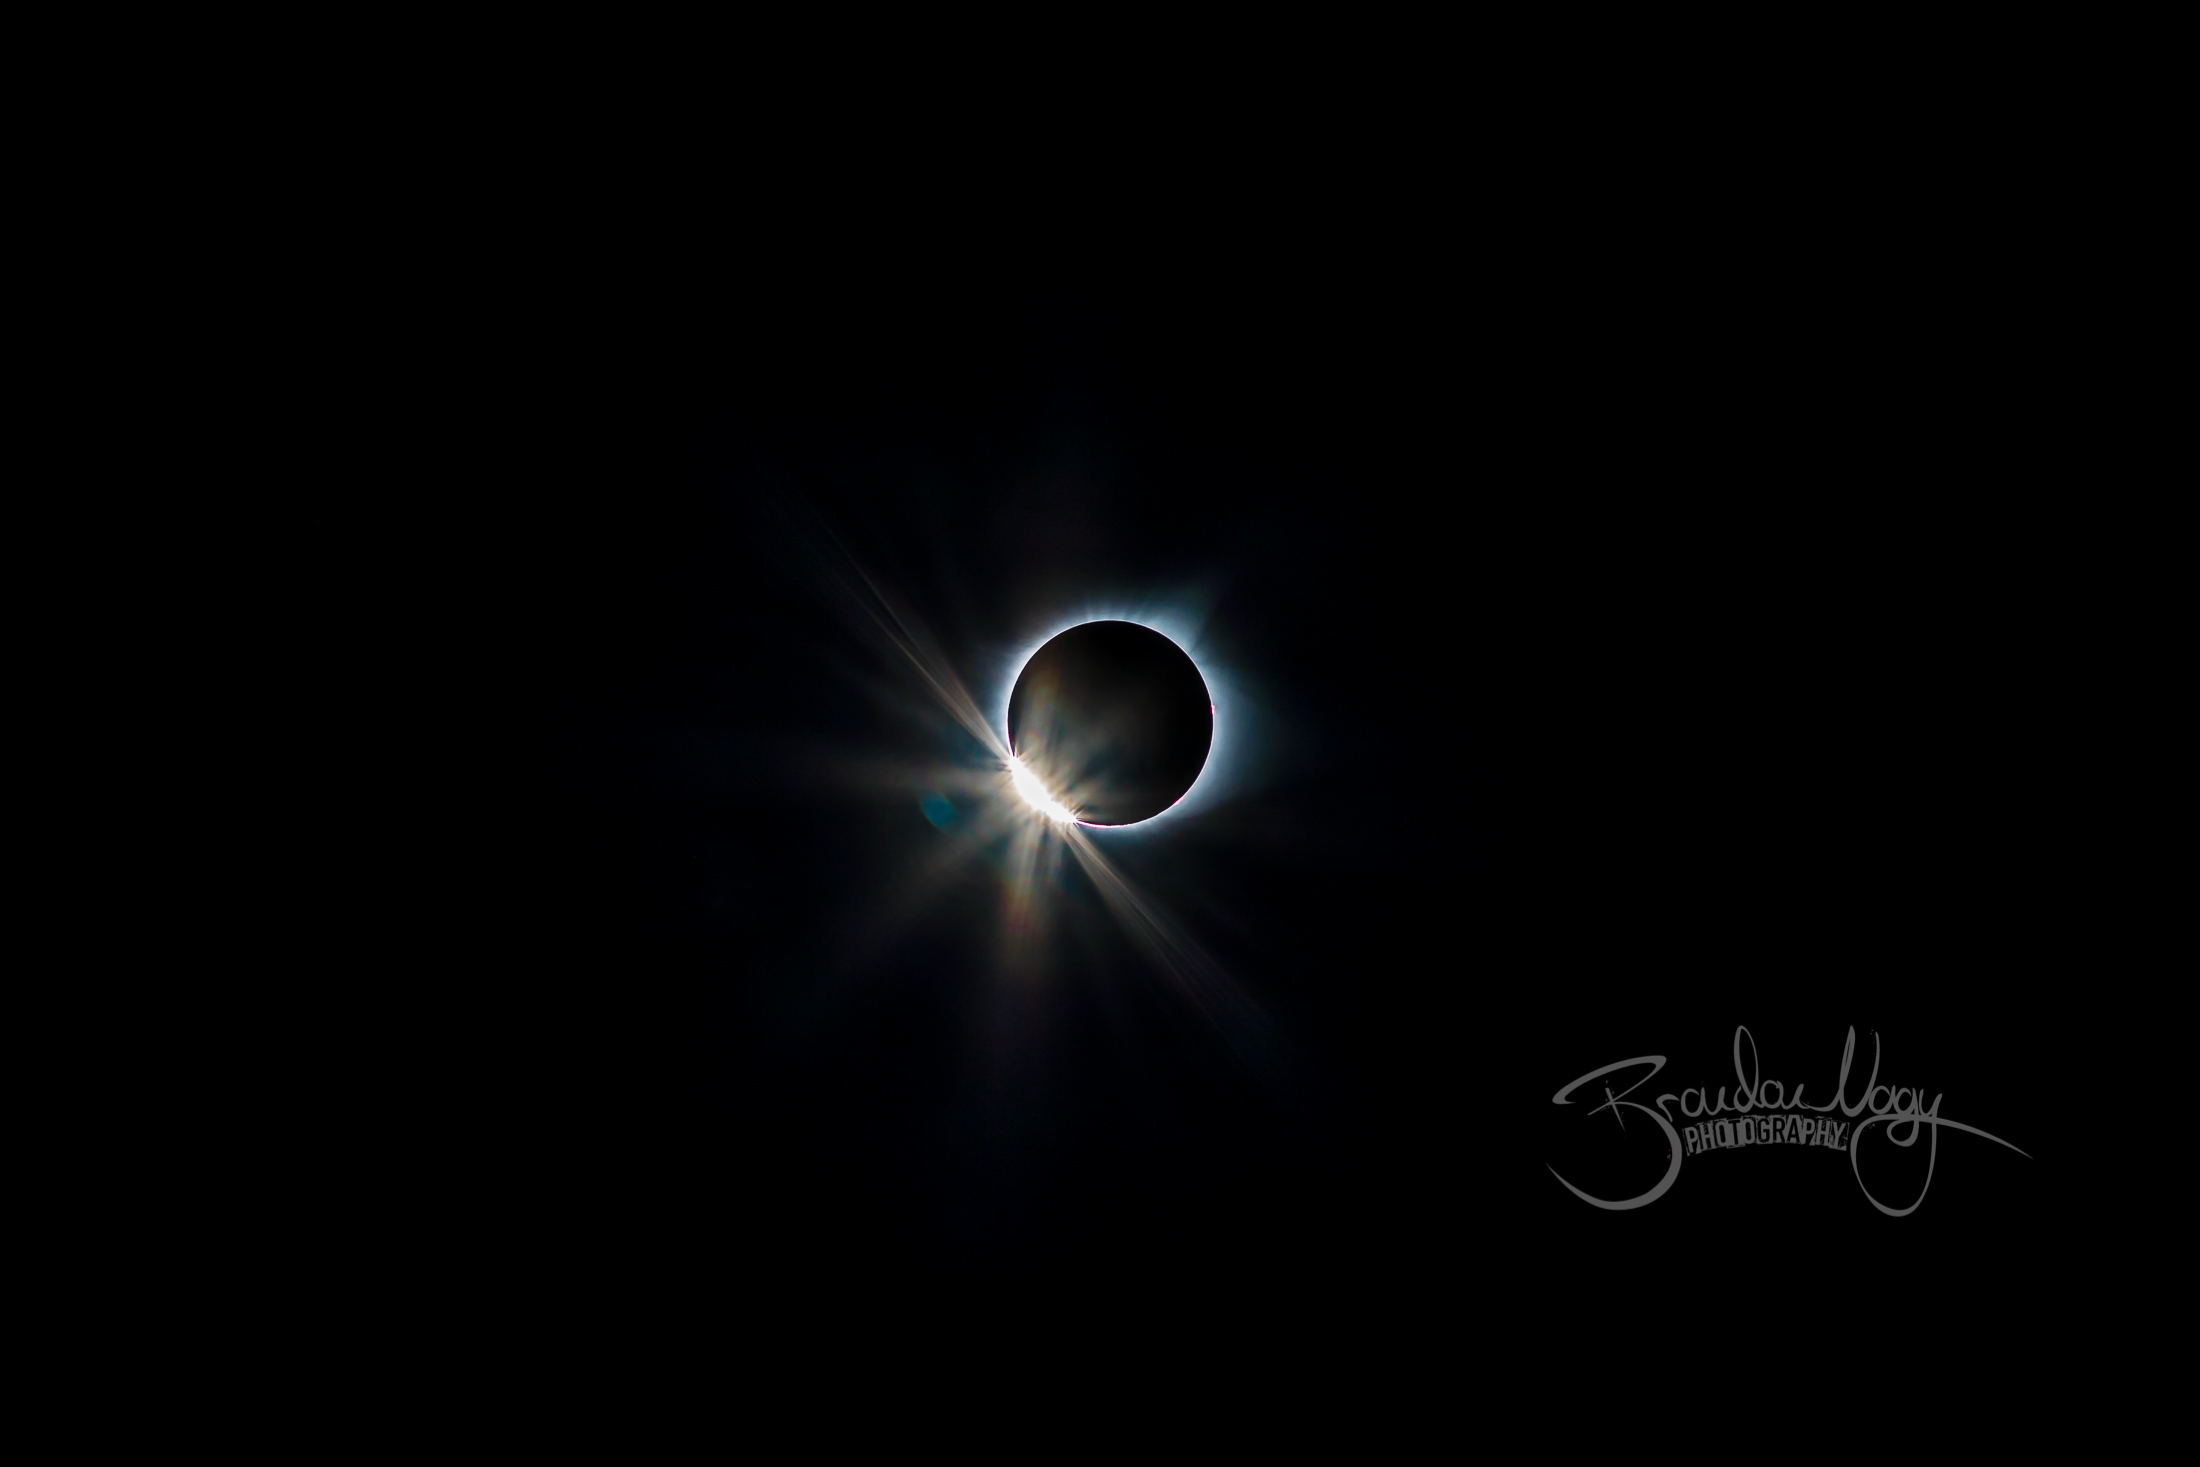 North American Solar Eclipse | 2017.08.21